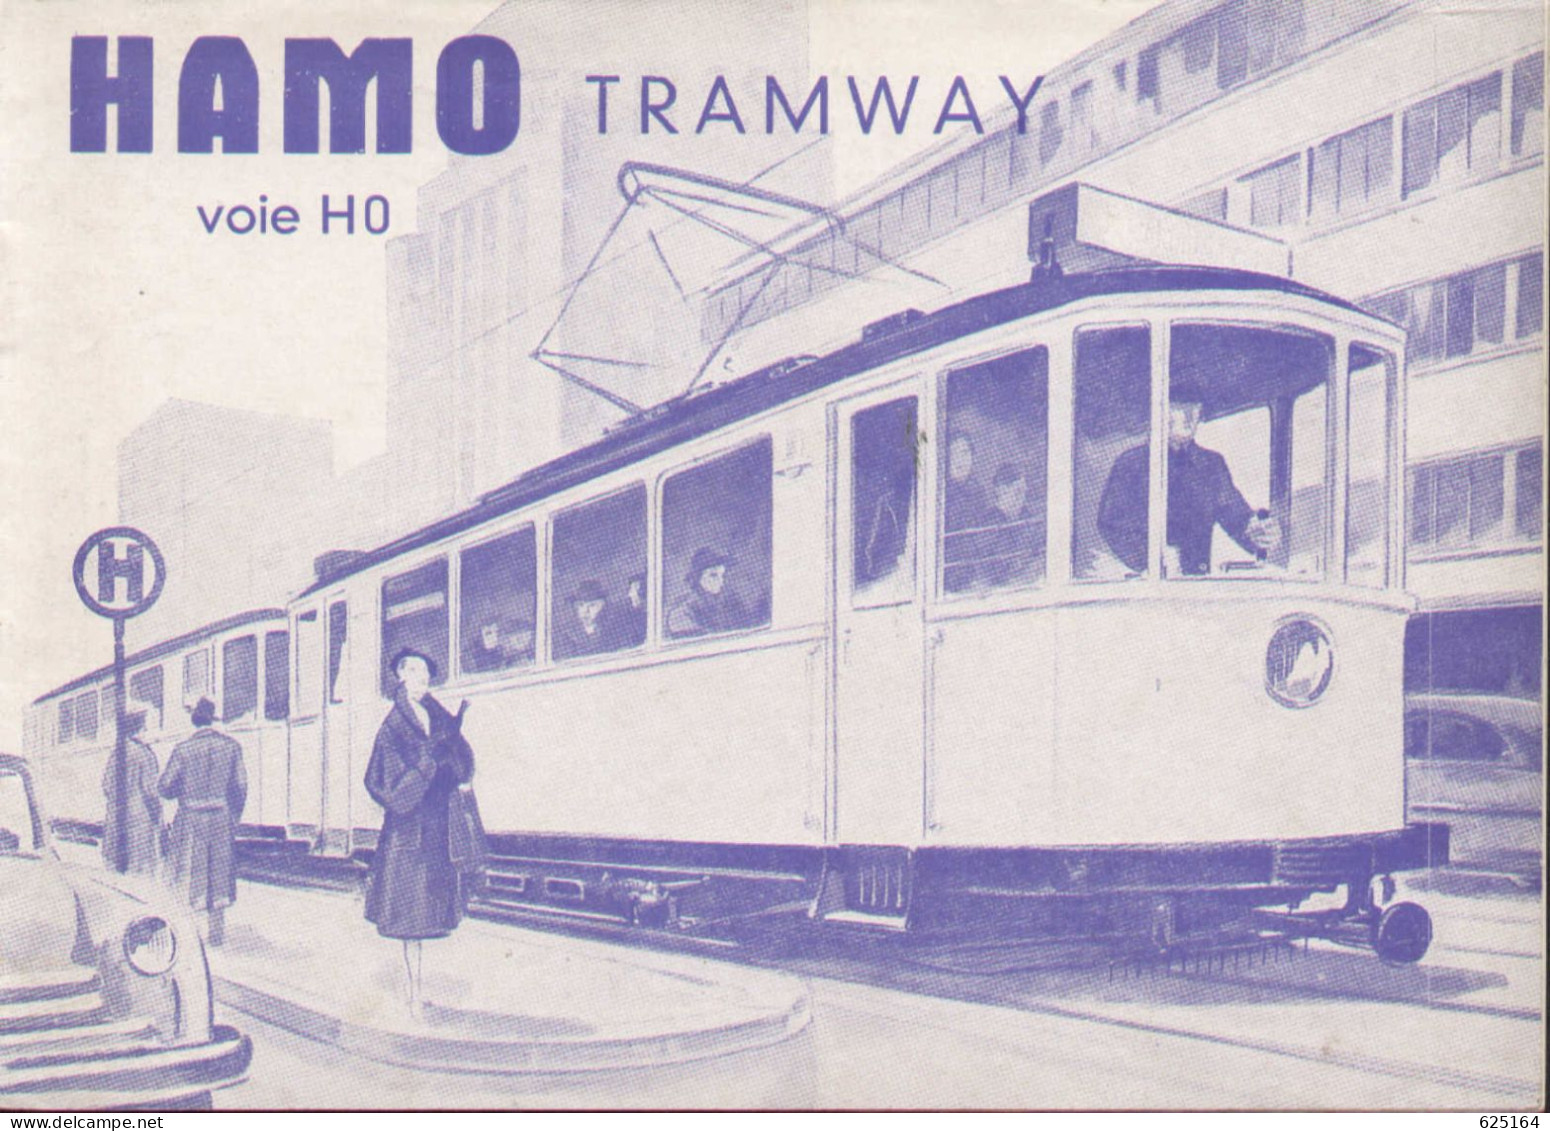 Catalogue HAMO TRAMWAY 1954 Voie HO 1:87 Französische Ausgabe - Französisch